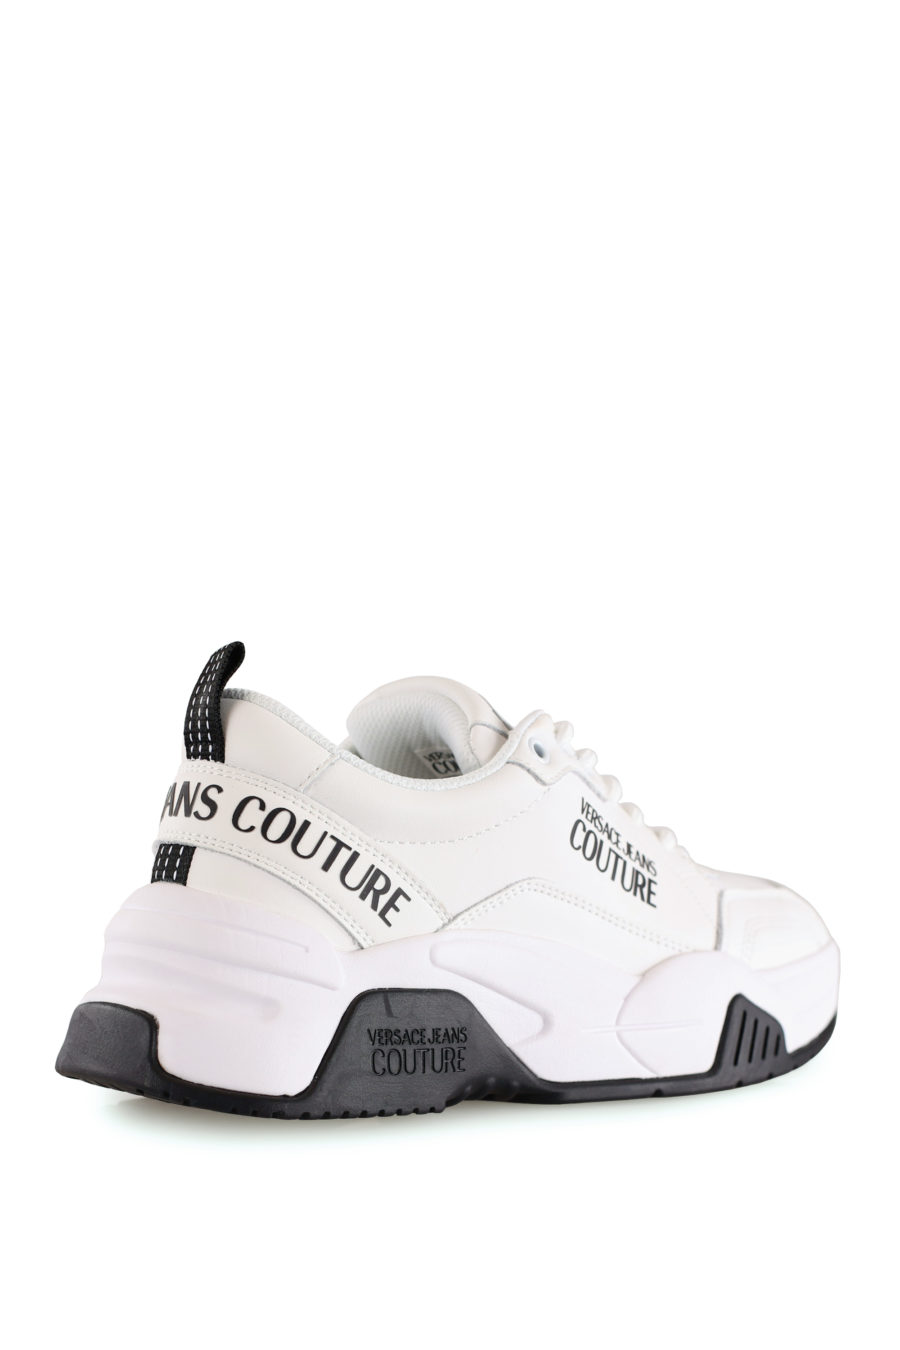 Zapatillas blancas con logotipo negro de la marca - IMG 8444 copia